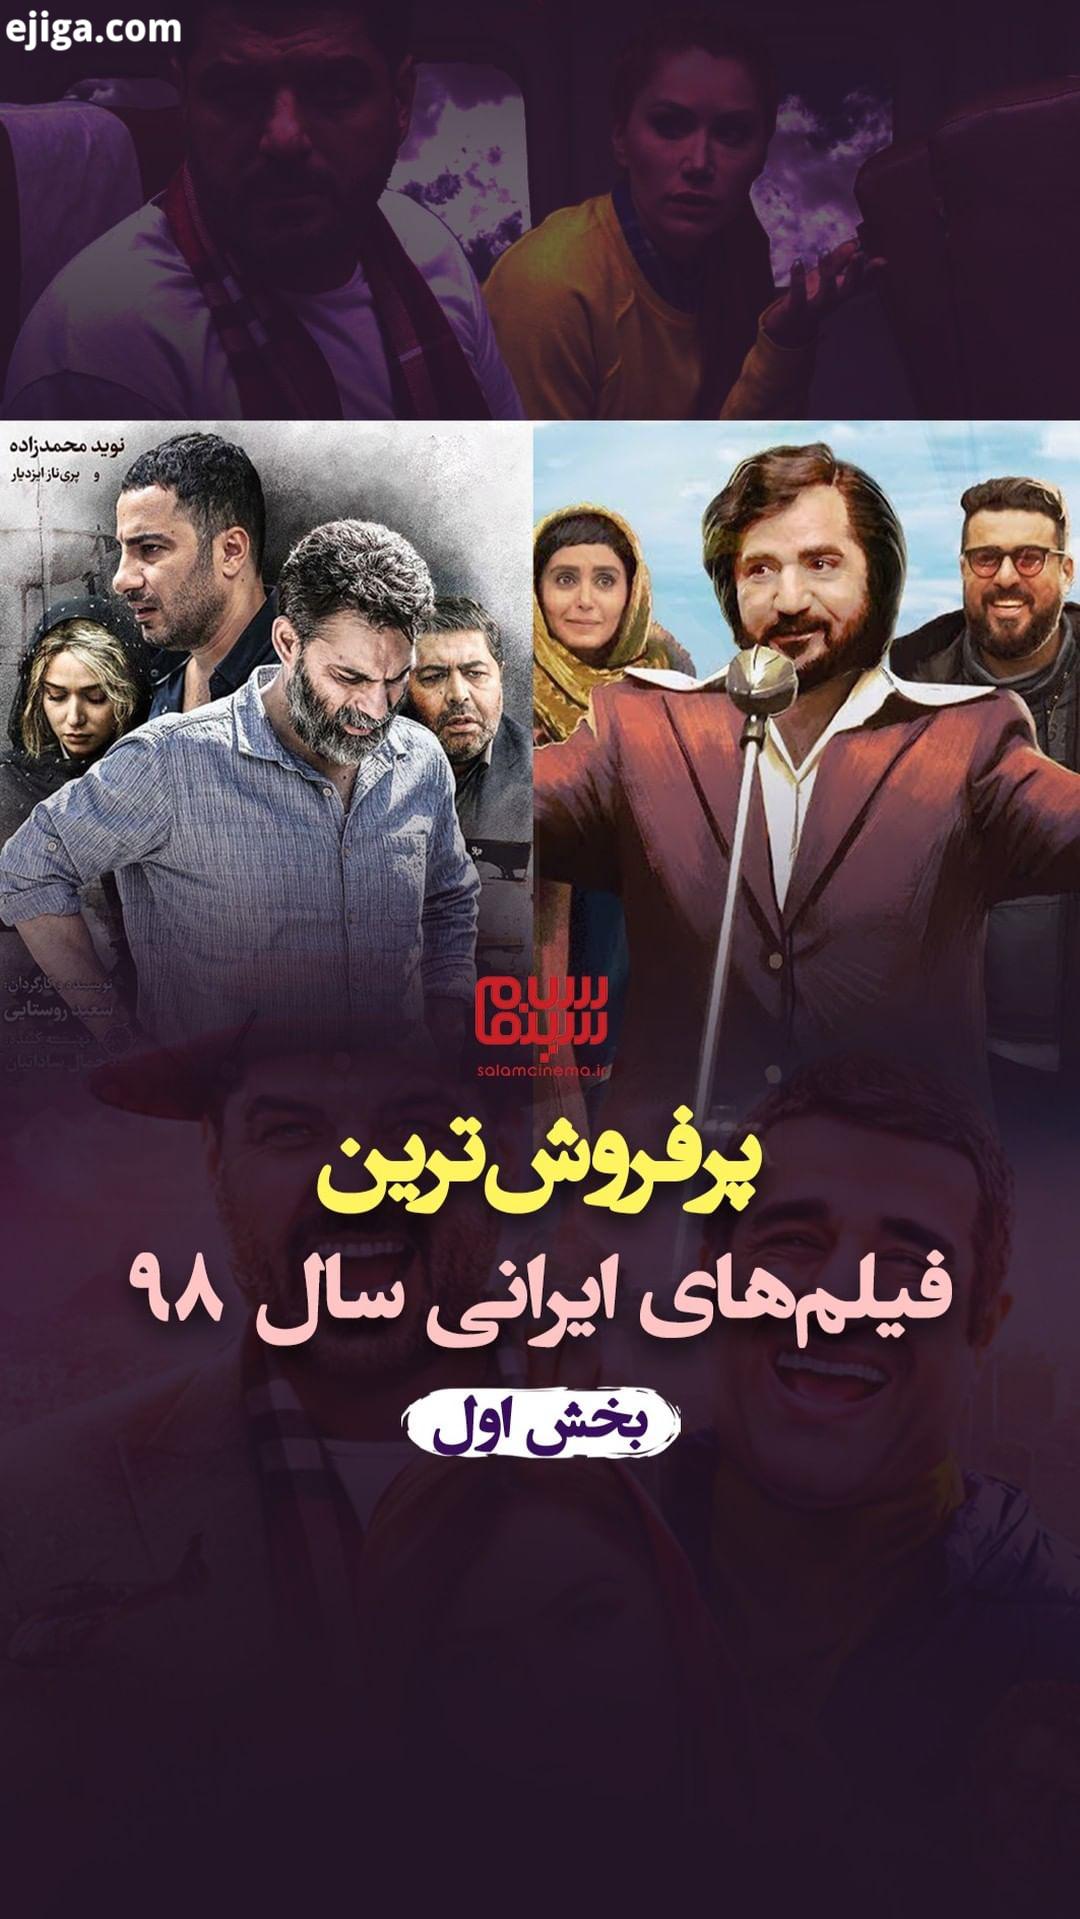 در سال در سینمای ایران، فیلم، در سینماهای ایران اکران شد ما در این ویدیو، پرفروش ترین فیلم های اکر